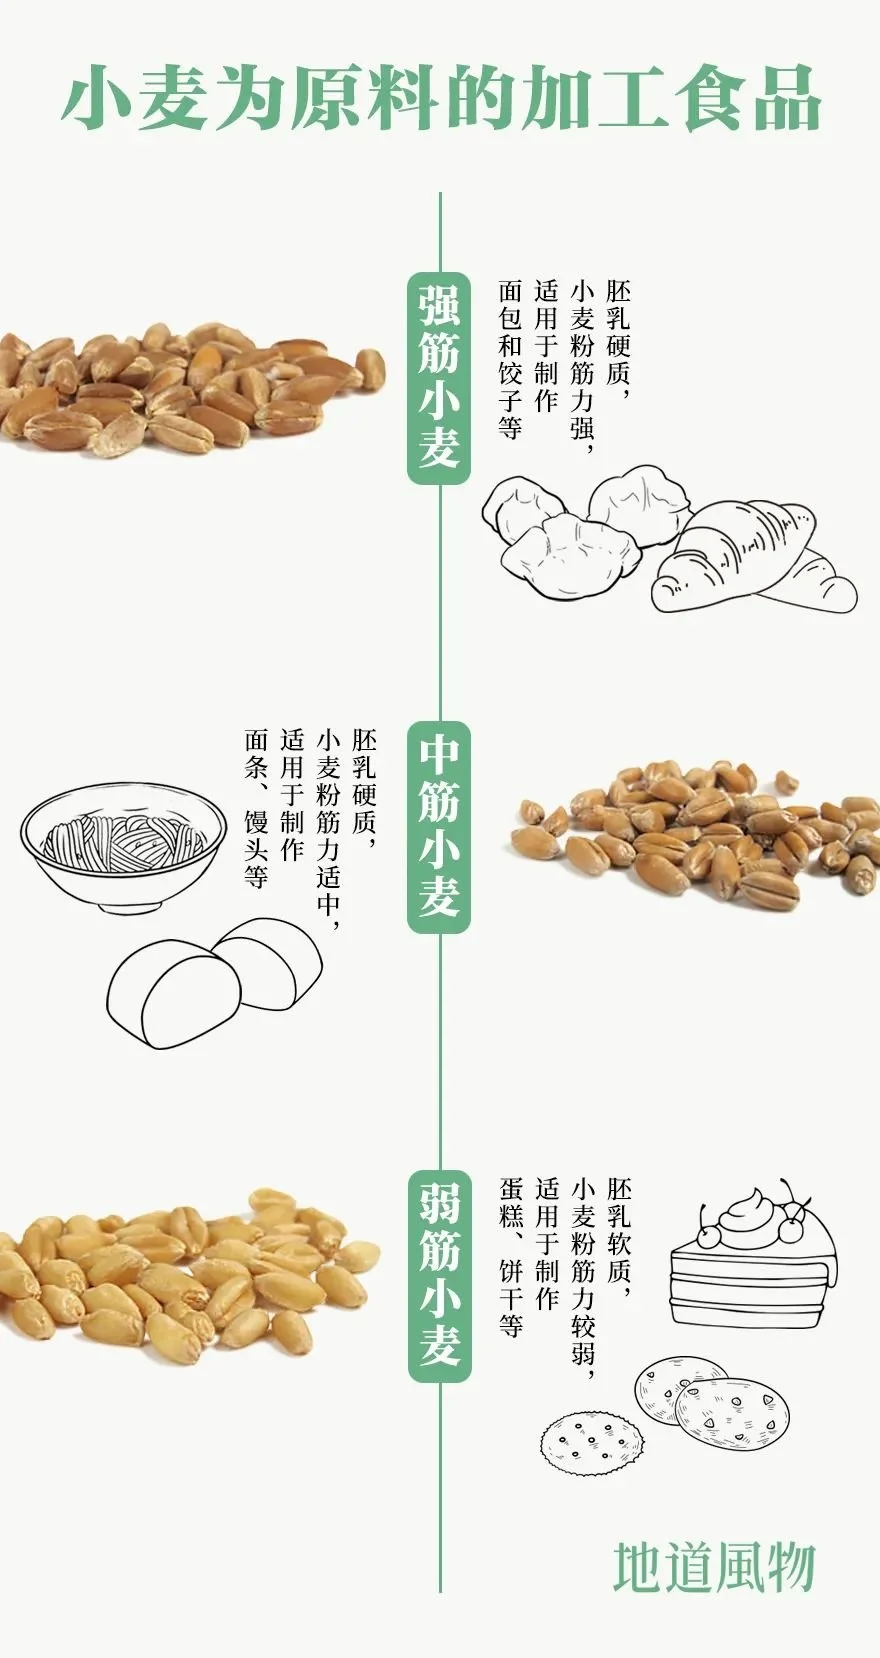 不同品种的小麦适合制作不同的食物。制图/刘航